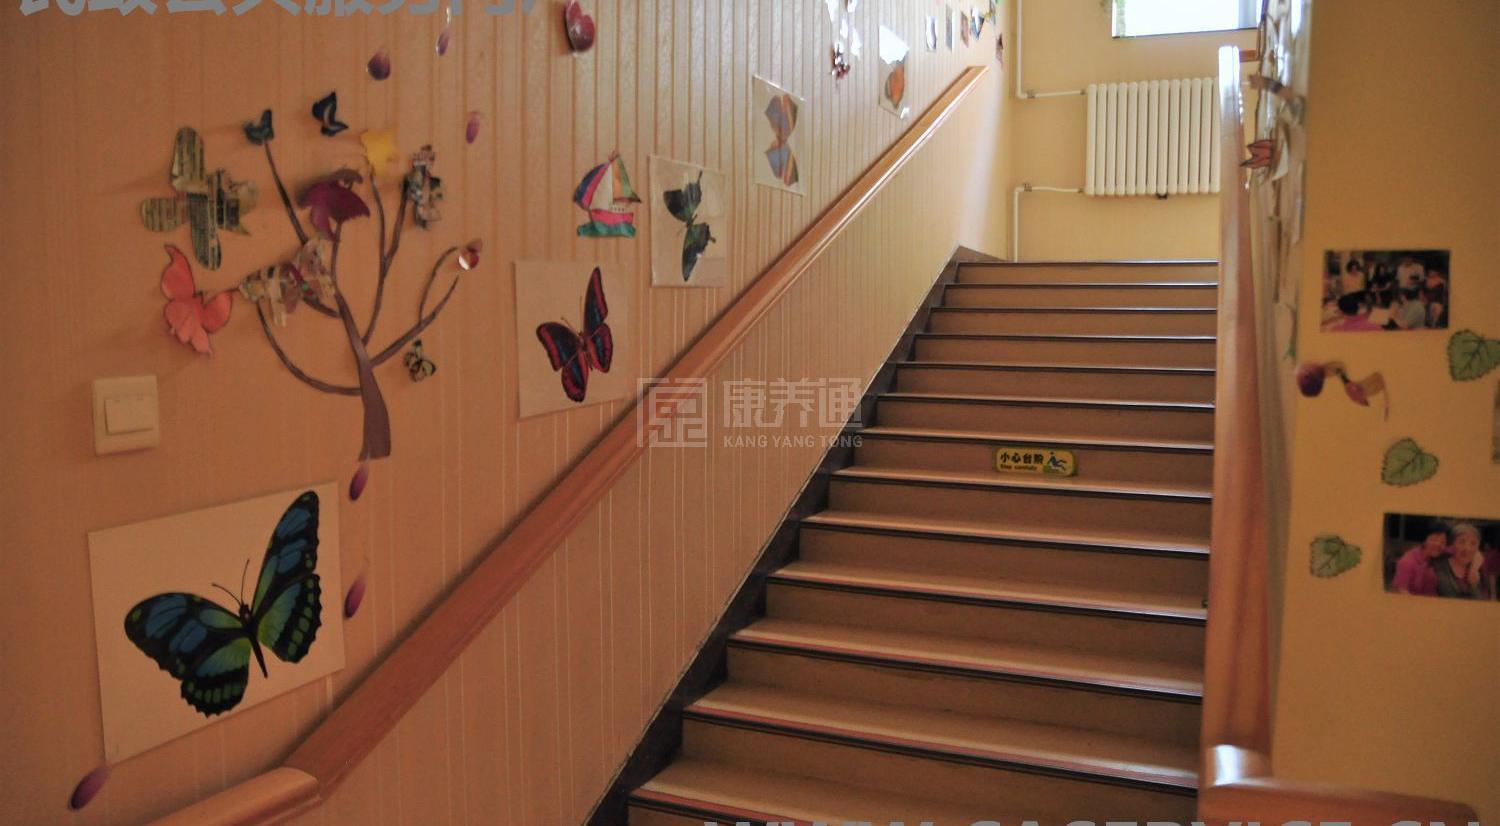 北京市朝阳区劲松老年家园环境图-走廊